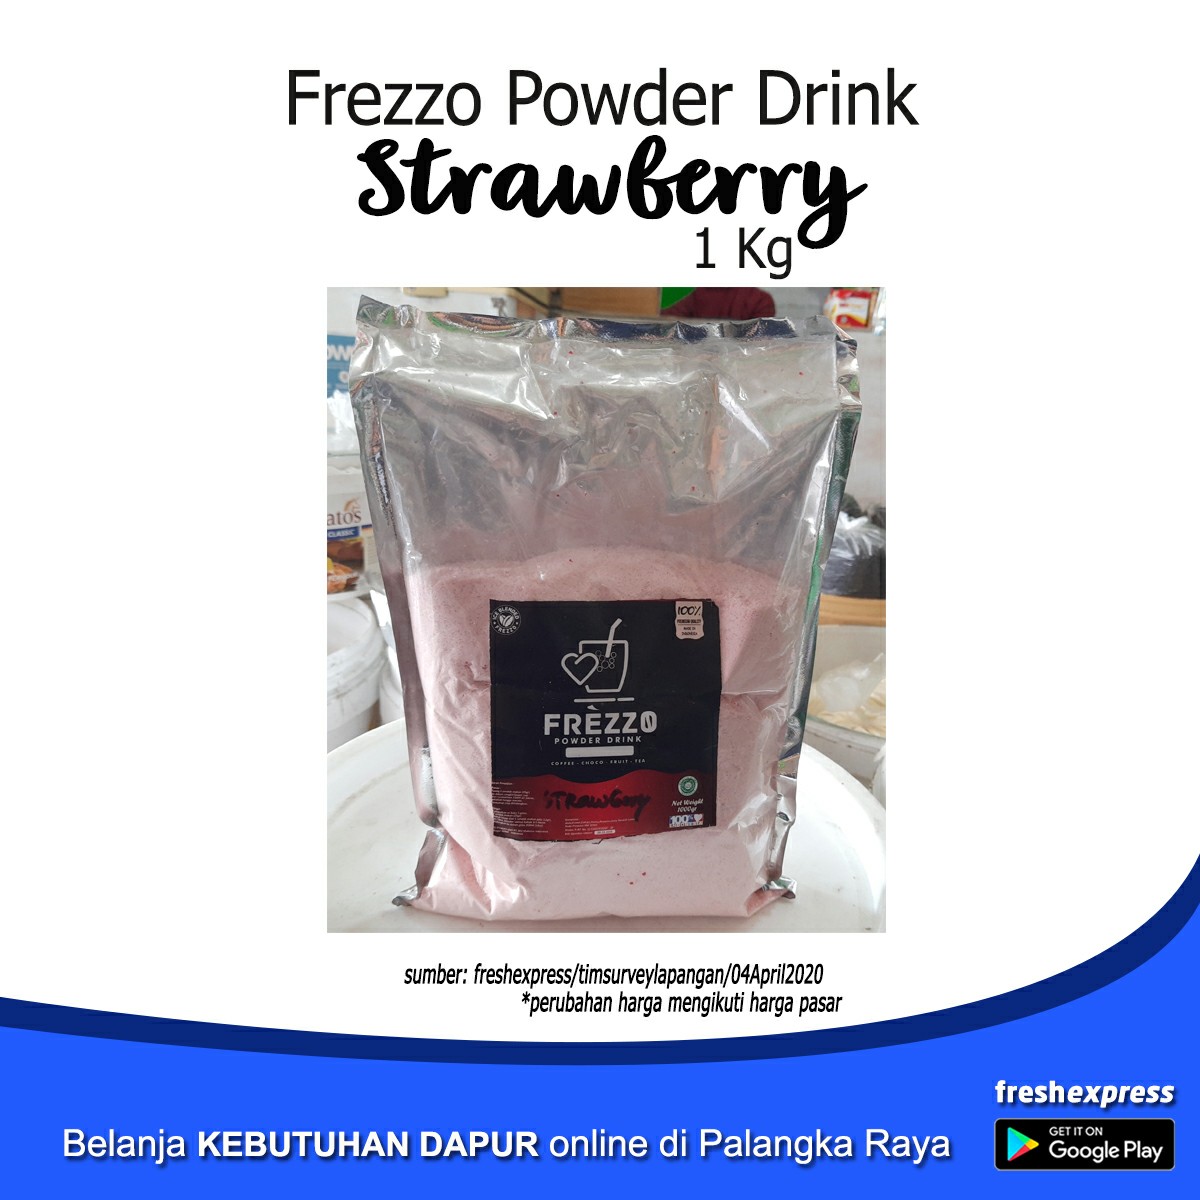 Frezzo Powder Drink - Strawberry